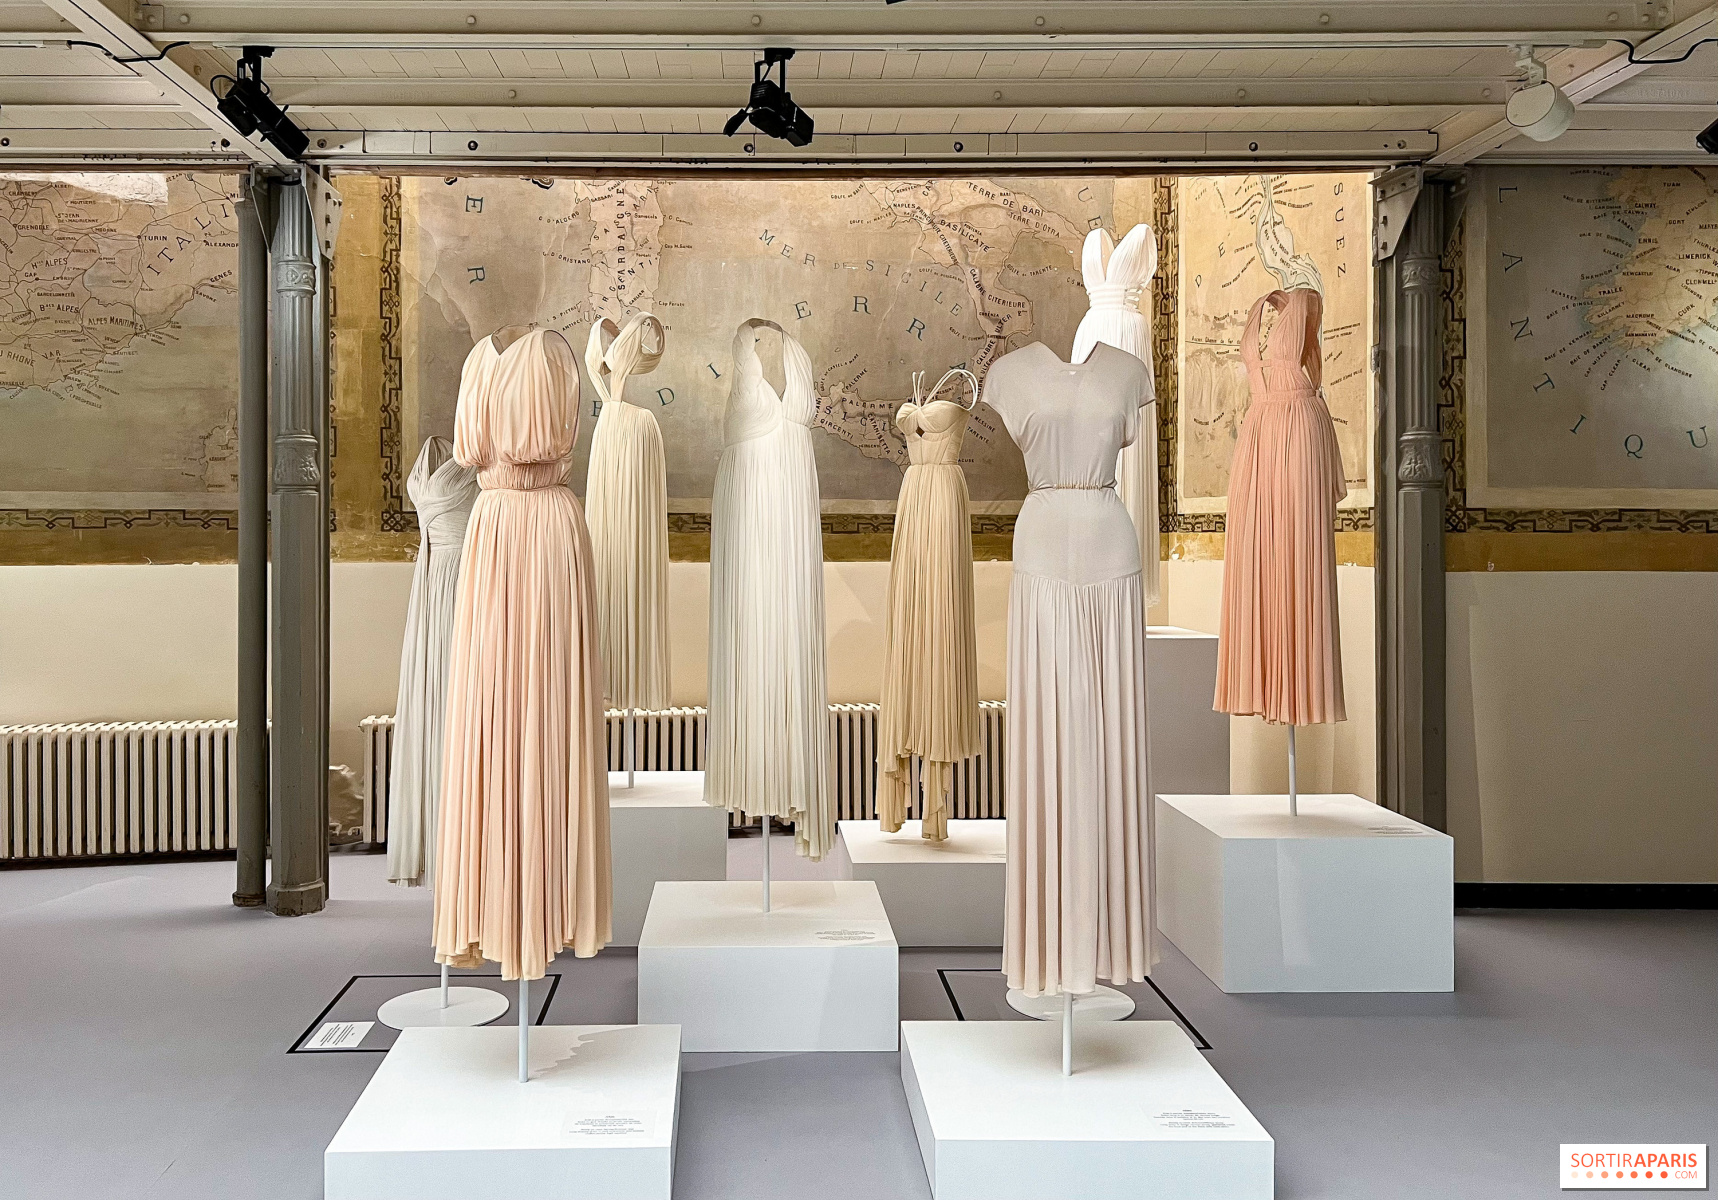 Alaïa/Grès beyond fashion, udstilling af skulpturelle kjoler på Alaïa Foundation - Sortiraparis.com